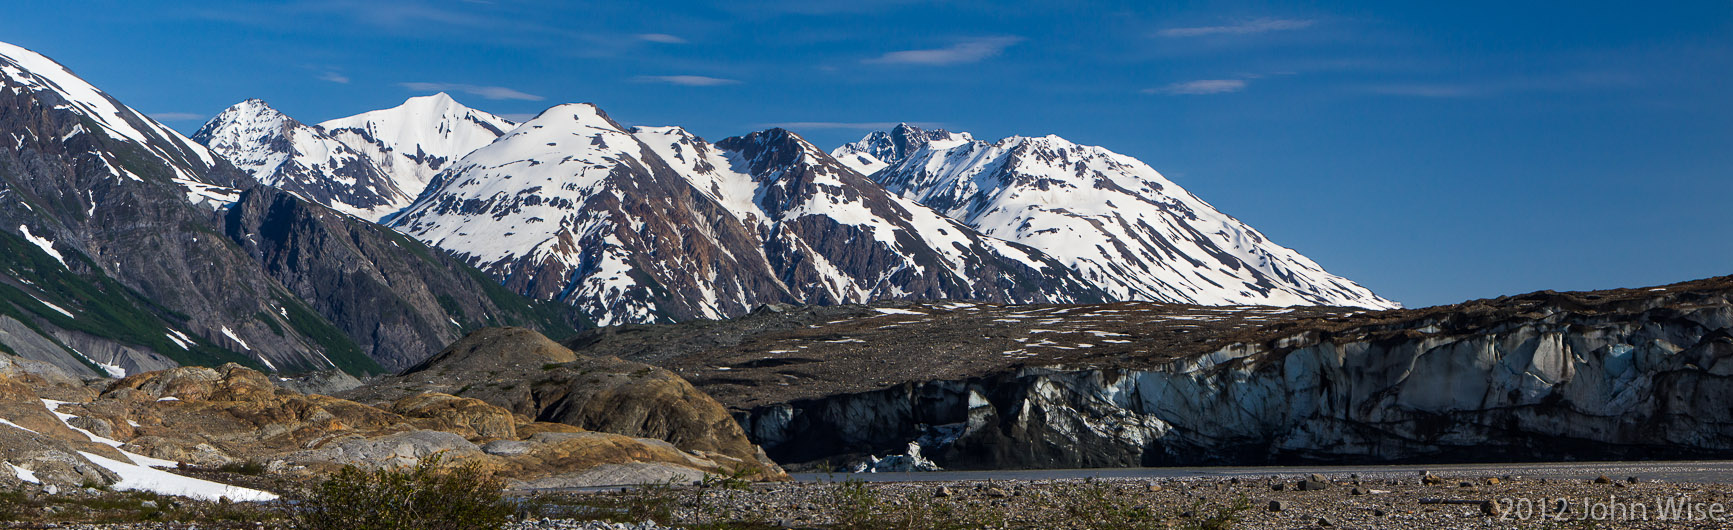 The Tweedsmuir Glacier in Tatshenshini-Alsek Provincial Park British Columbia, Canada